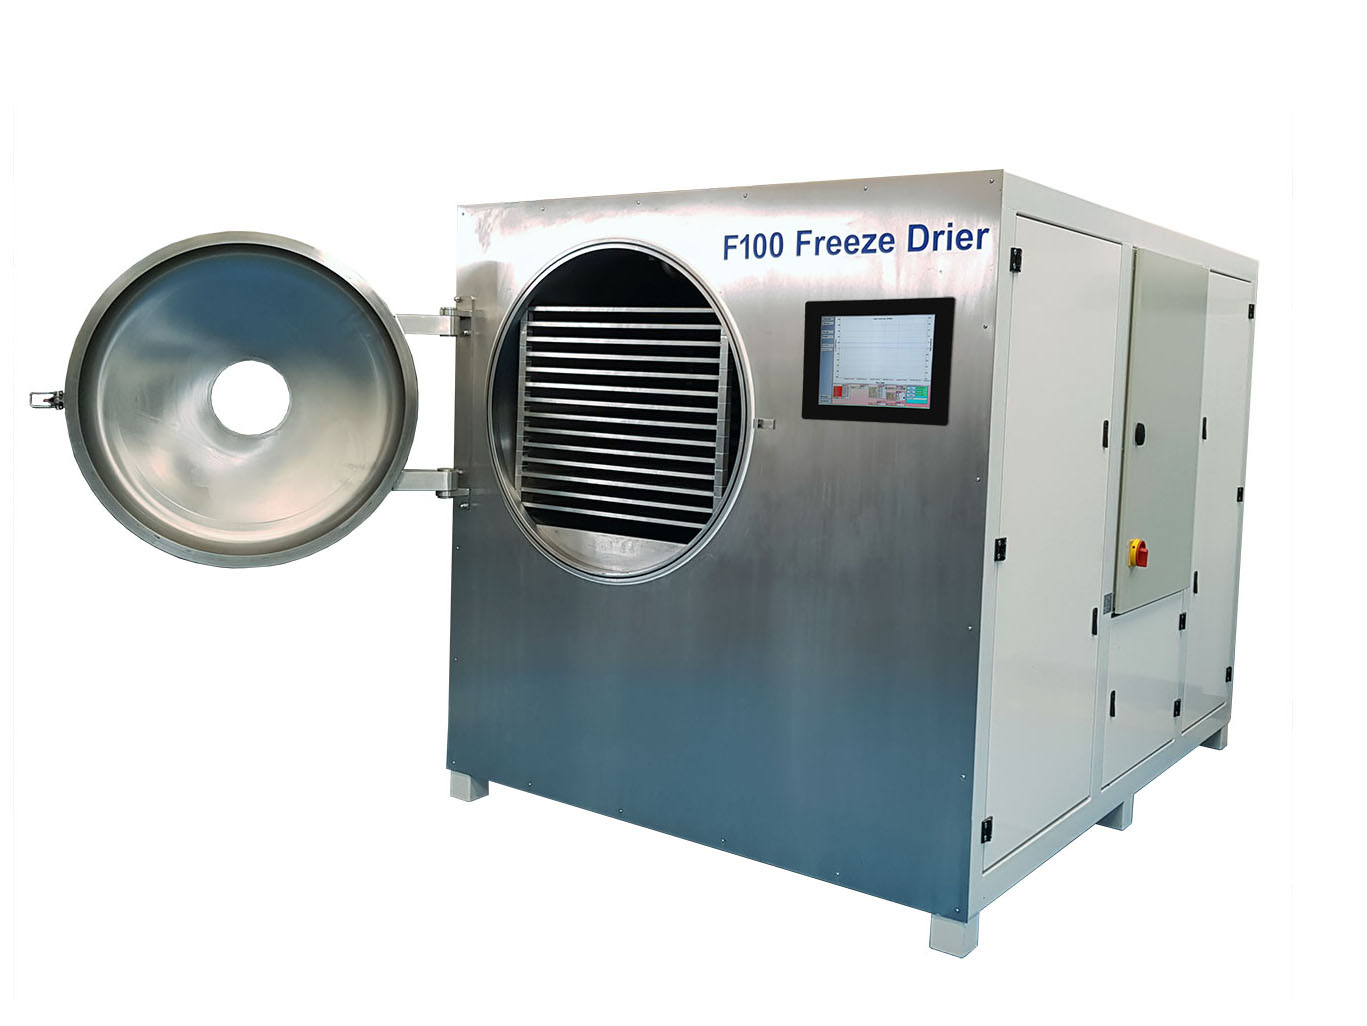 F100 Freeze drier with door open